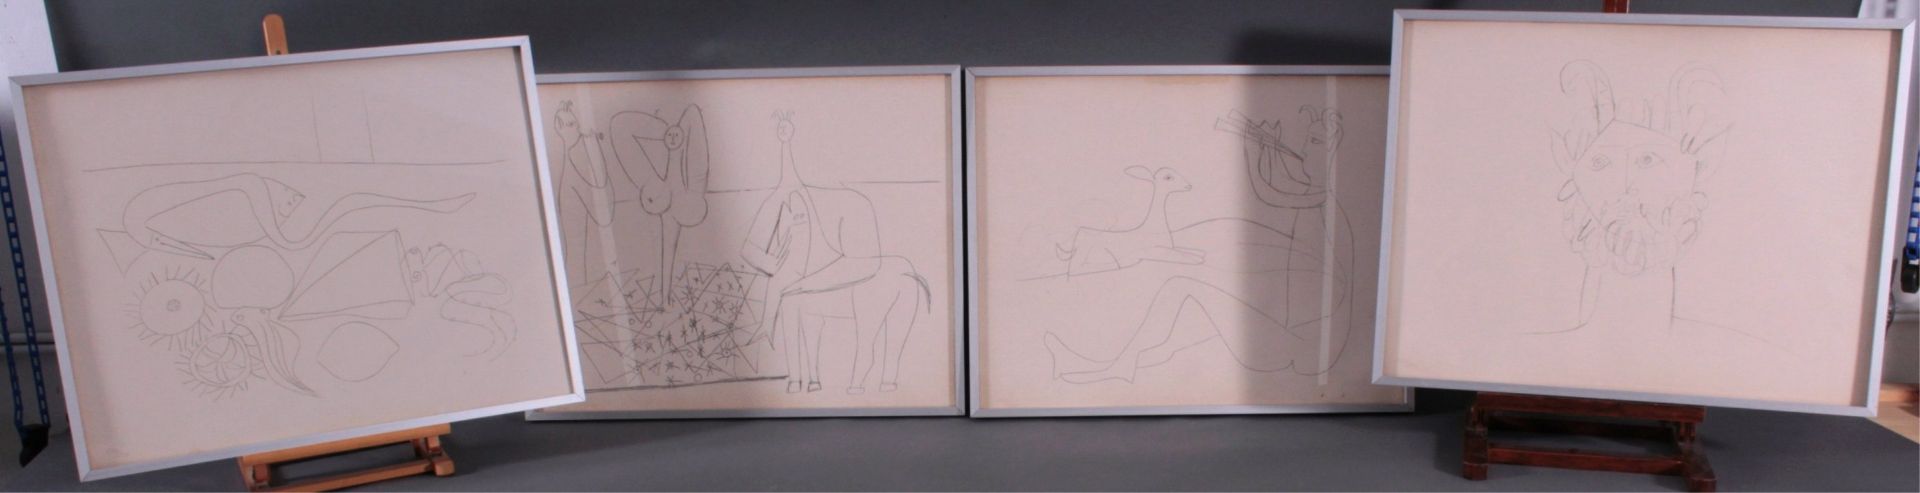 4 Picasso Reproduktionen vom Daniel Jacomet,Verso druckgraphisch bezeichnet "Les Dessins D`